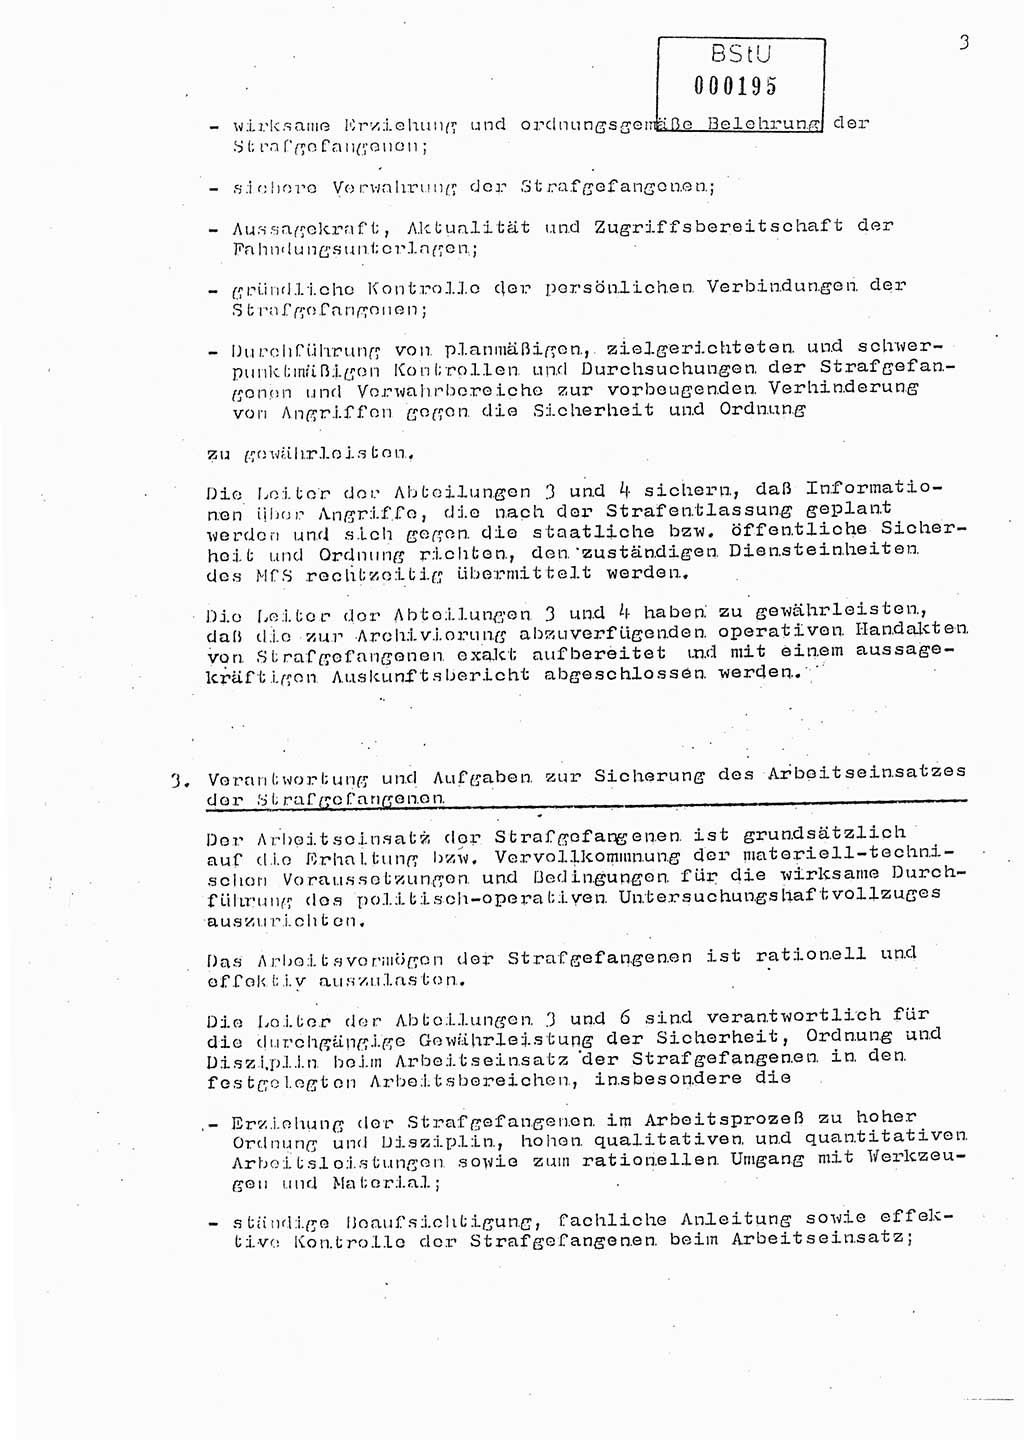 Anweisung Nr. 1/89 zur Gewährleistung der Sicherheit und Ordnung in den Strafgefangenenarbeitskommandos (SGAK) der Abteilung ⅩⅣ des MfS Berlin, Ministerium für Staatssicherheit (MfS) [Deutsche Demokratische Republik (DDR)], Abteilung (Abt.) ⅩⅣ, Berlin 1989, Seite 3 (Anw. 1/89 MfS DDR Abt. ⅩⅣ 1/89 1989, S. 3)